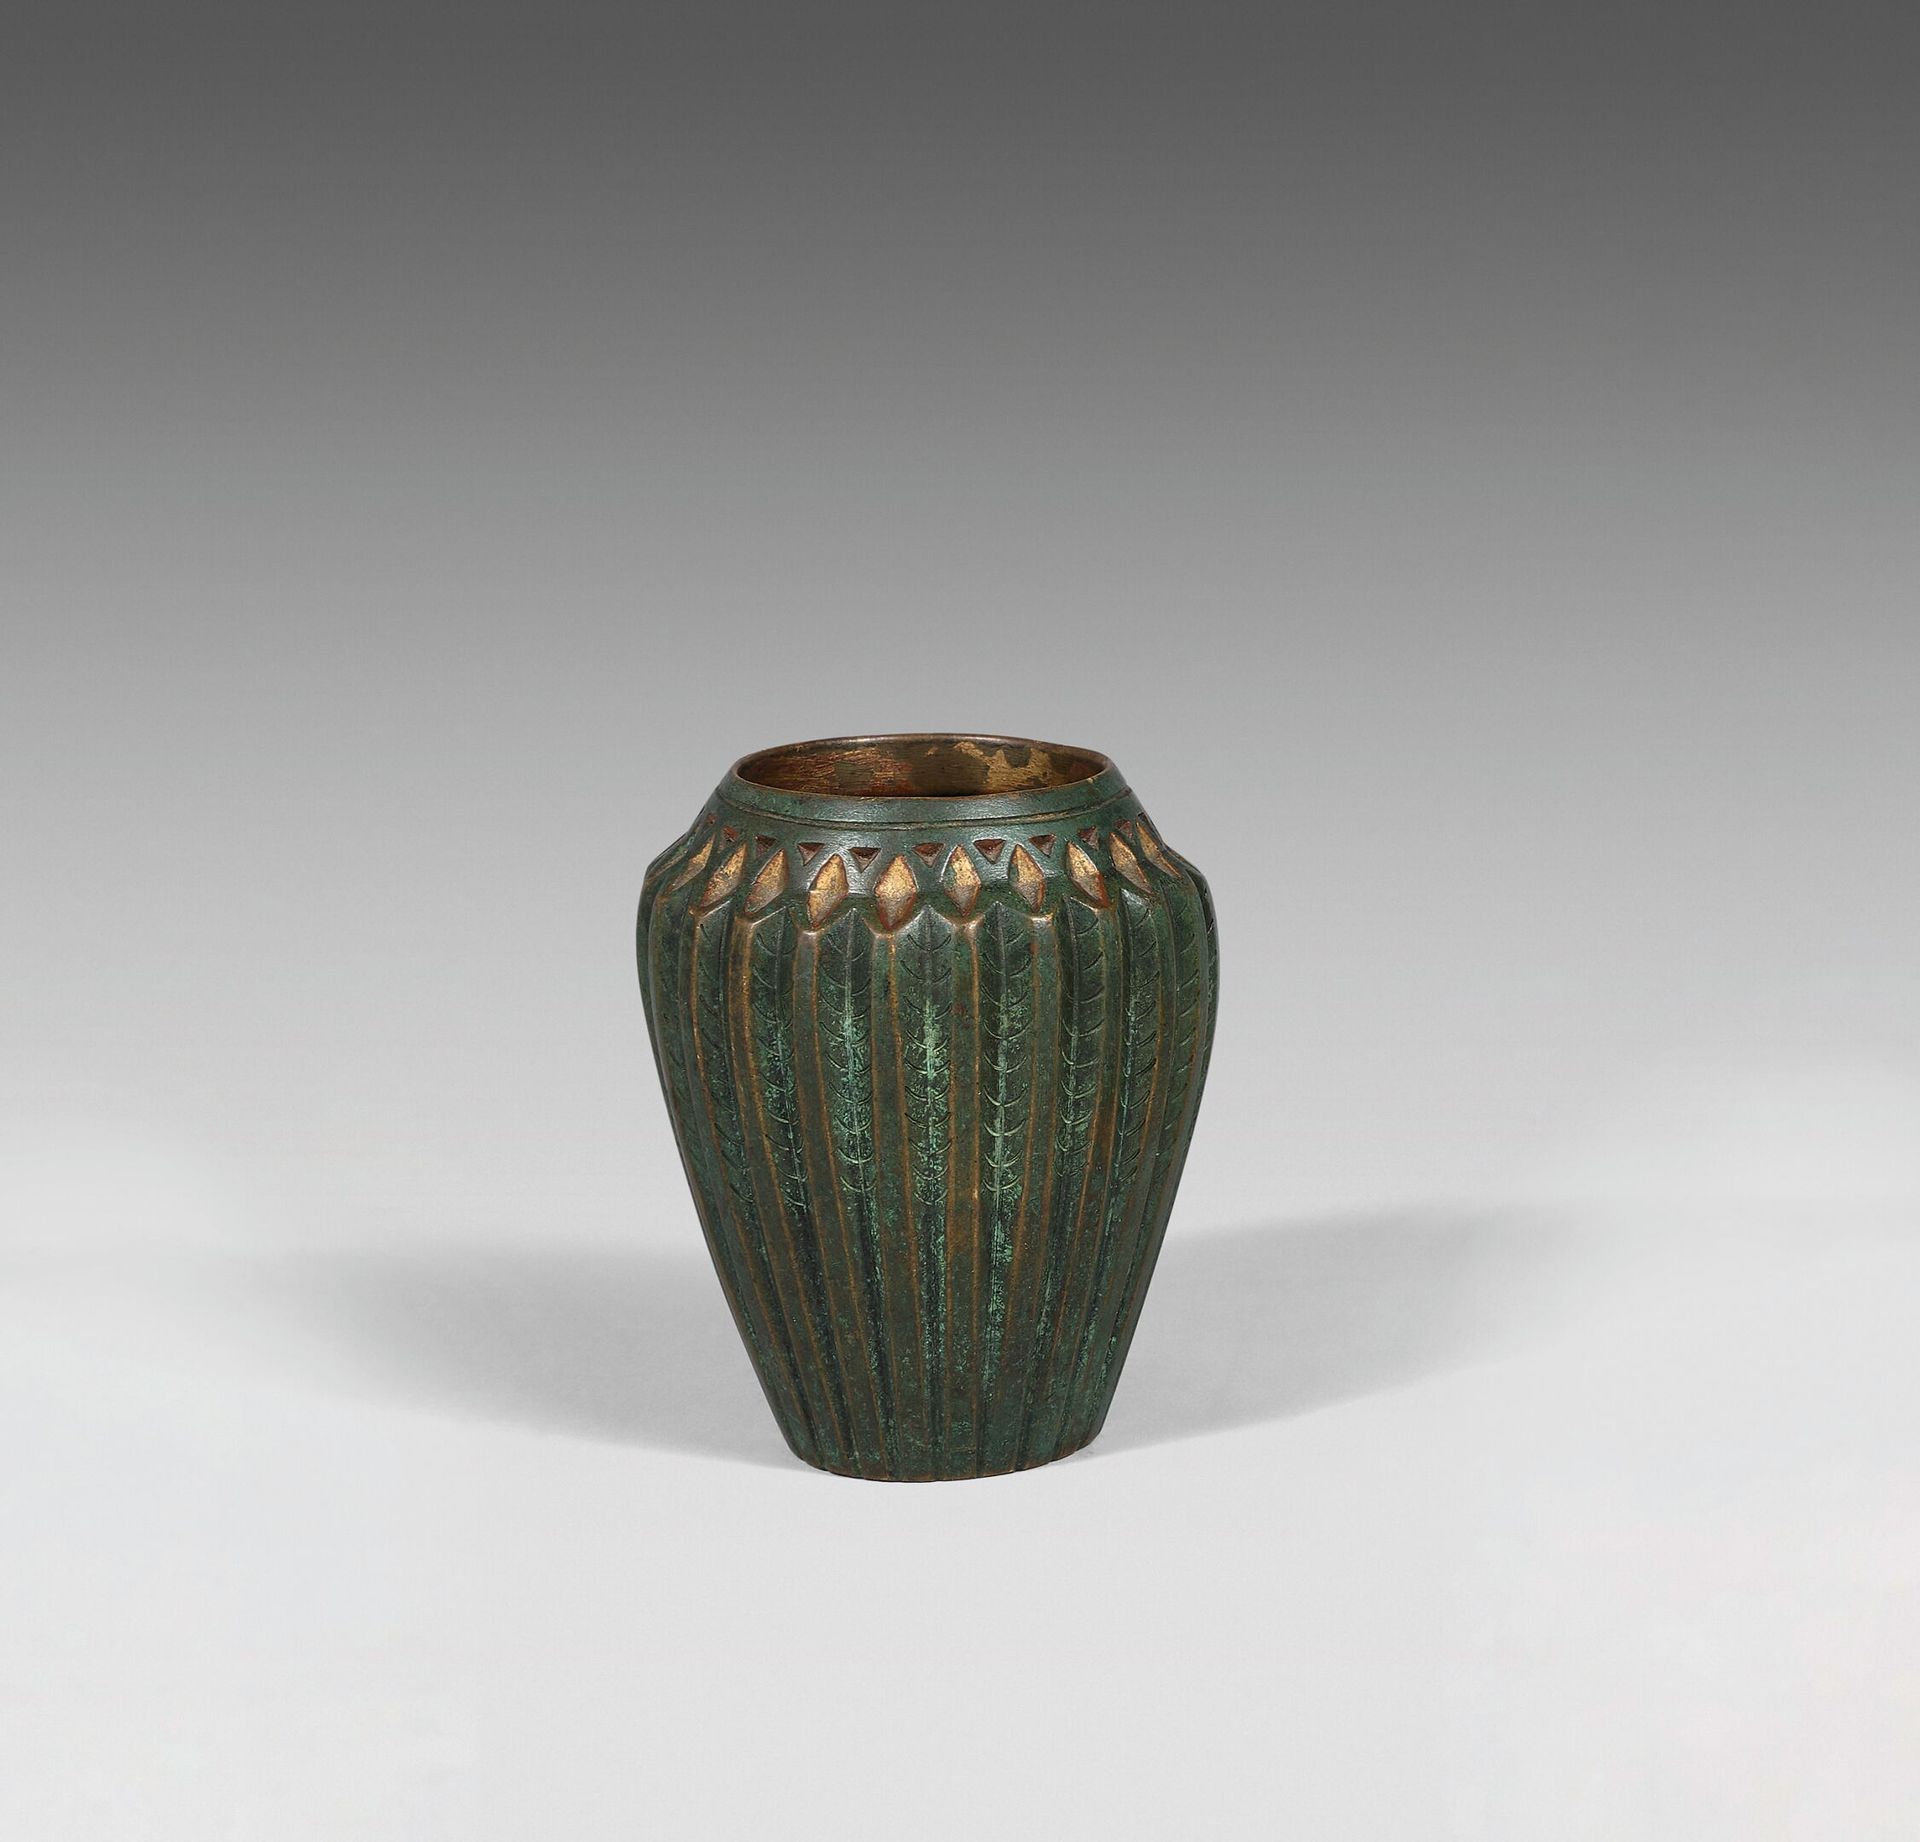 Null 让-杜南 (1877-1942)
一个肩部膨胀的小圆锥形花瓶。青铜材质的证明，带有绿色铜锈和鎏金，旧版铸造。镂空装饰的风格化的叶子。
有 "J.D "&hellip;